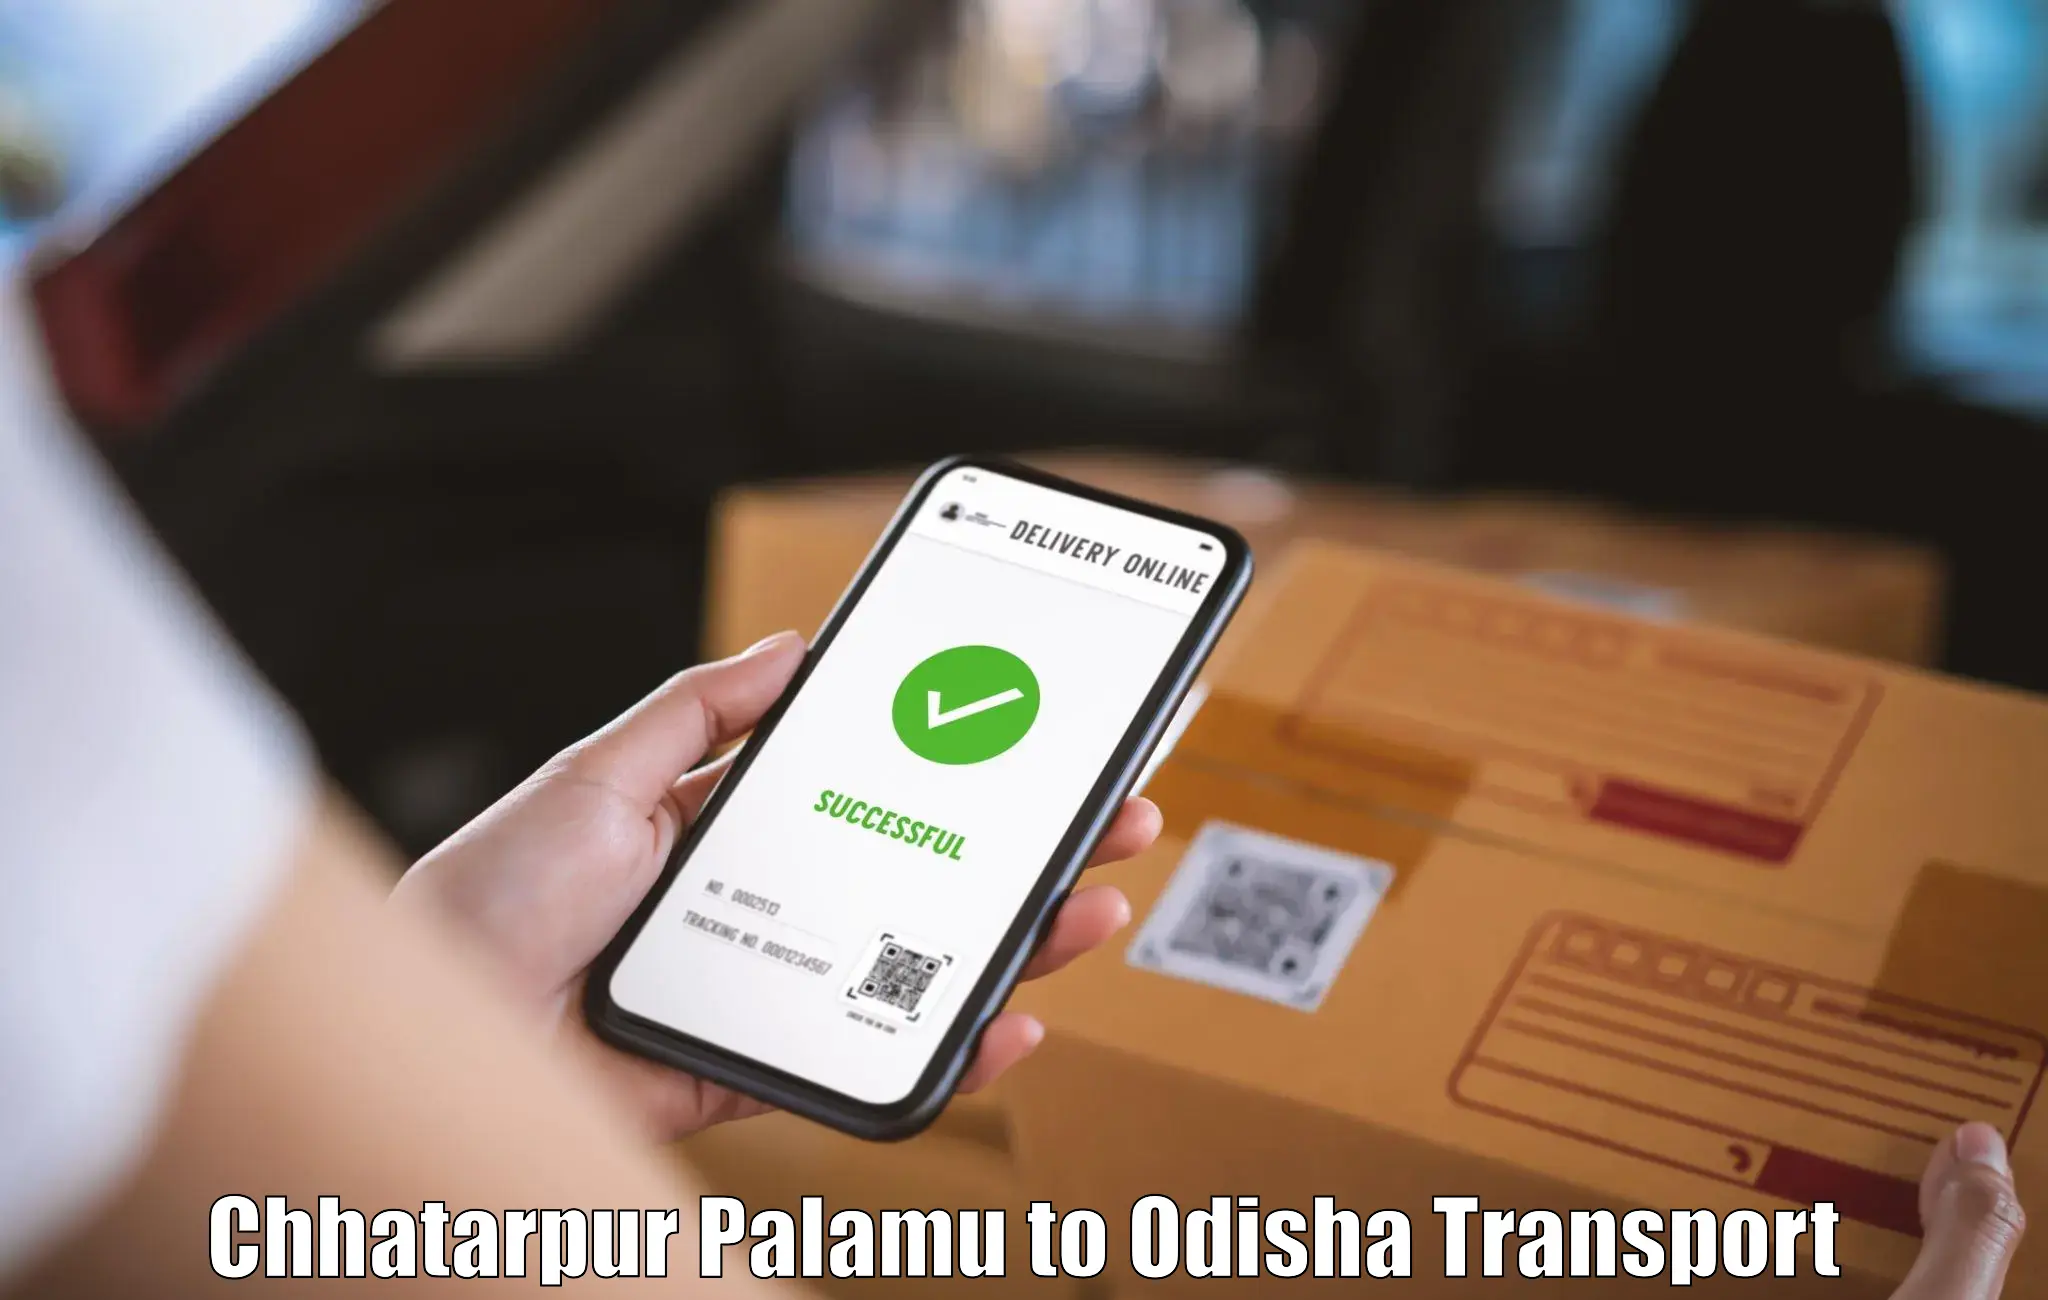 Two wheeler transport services Chhatarpur Palamu to Kalahandi